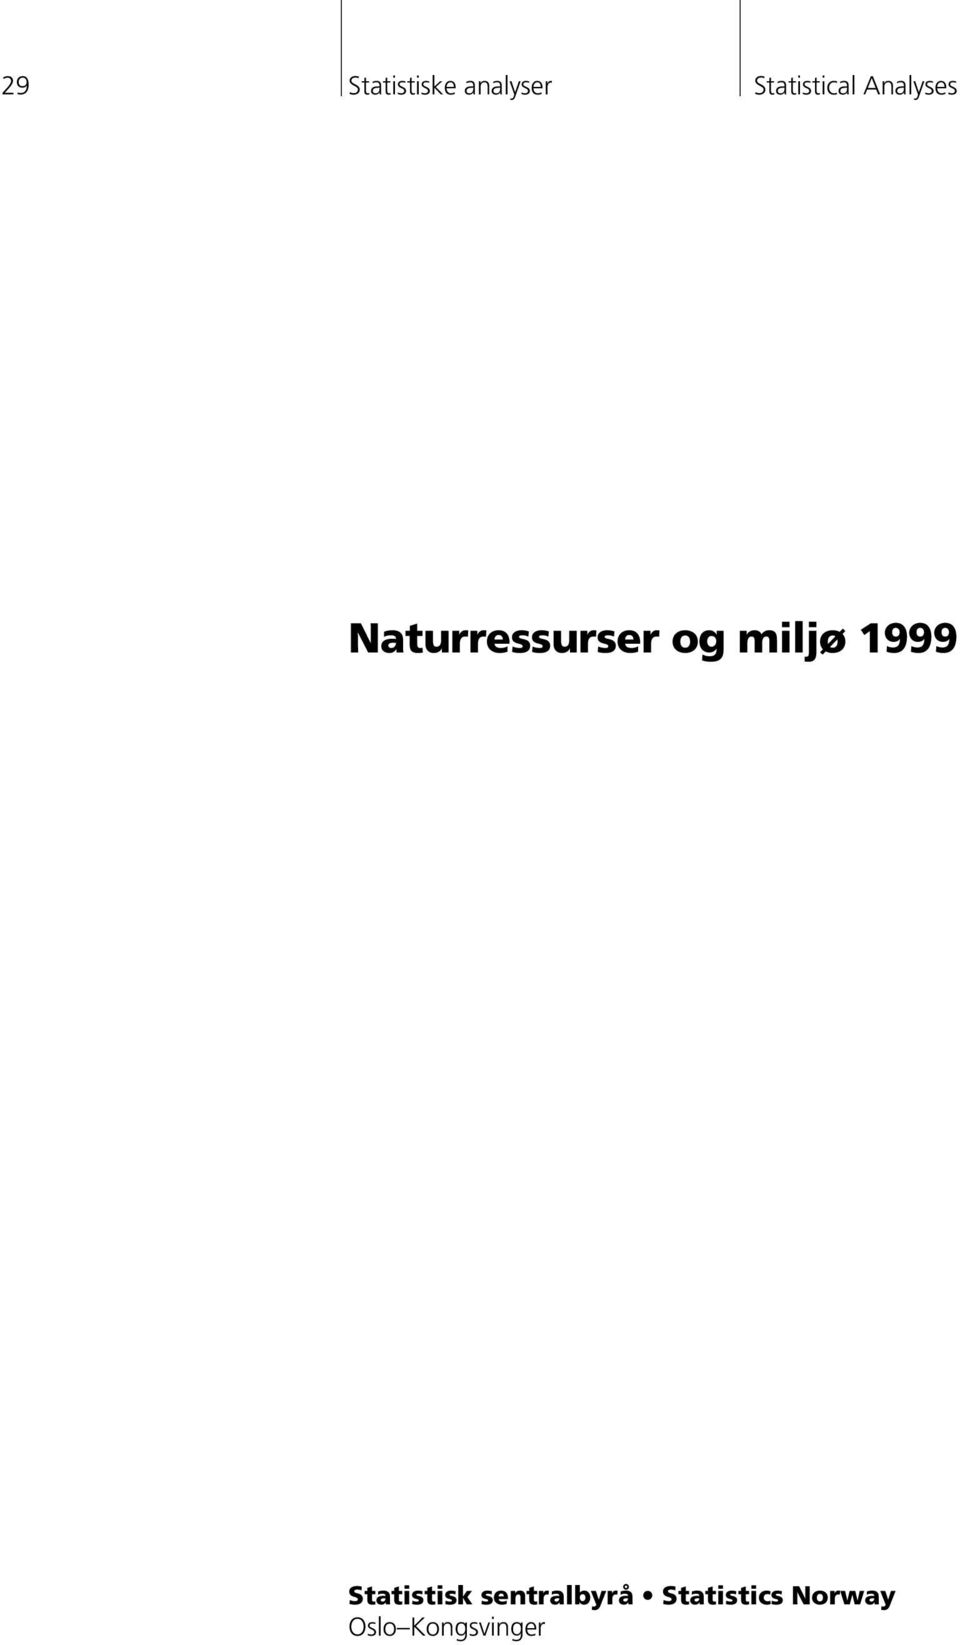 Naturressurser og miljø 1999